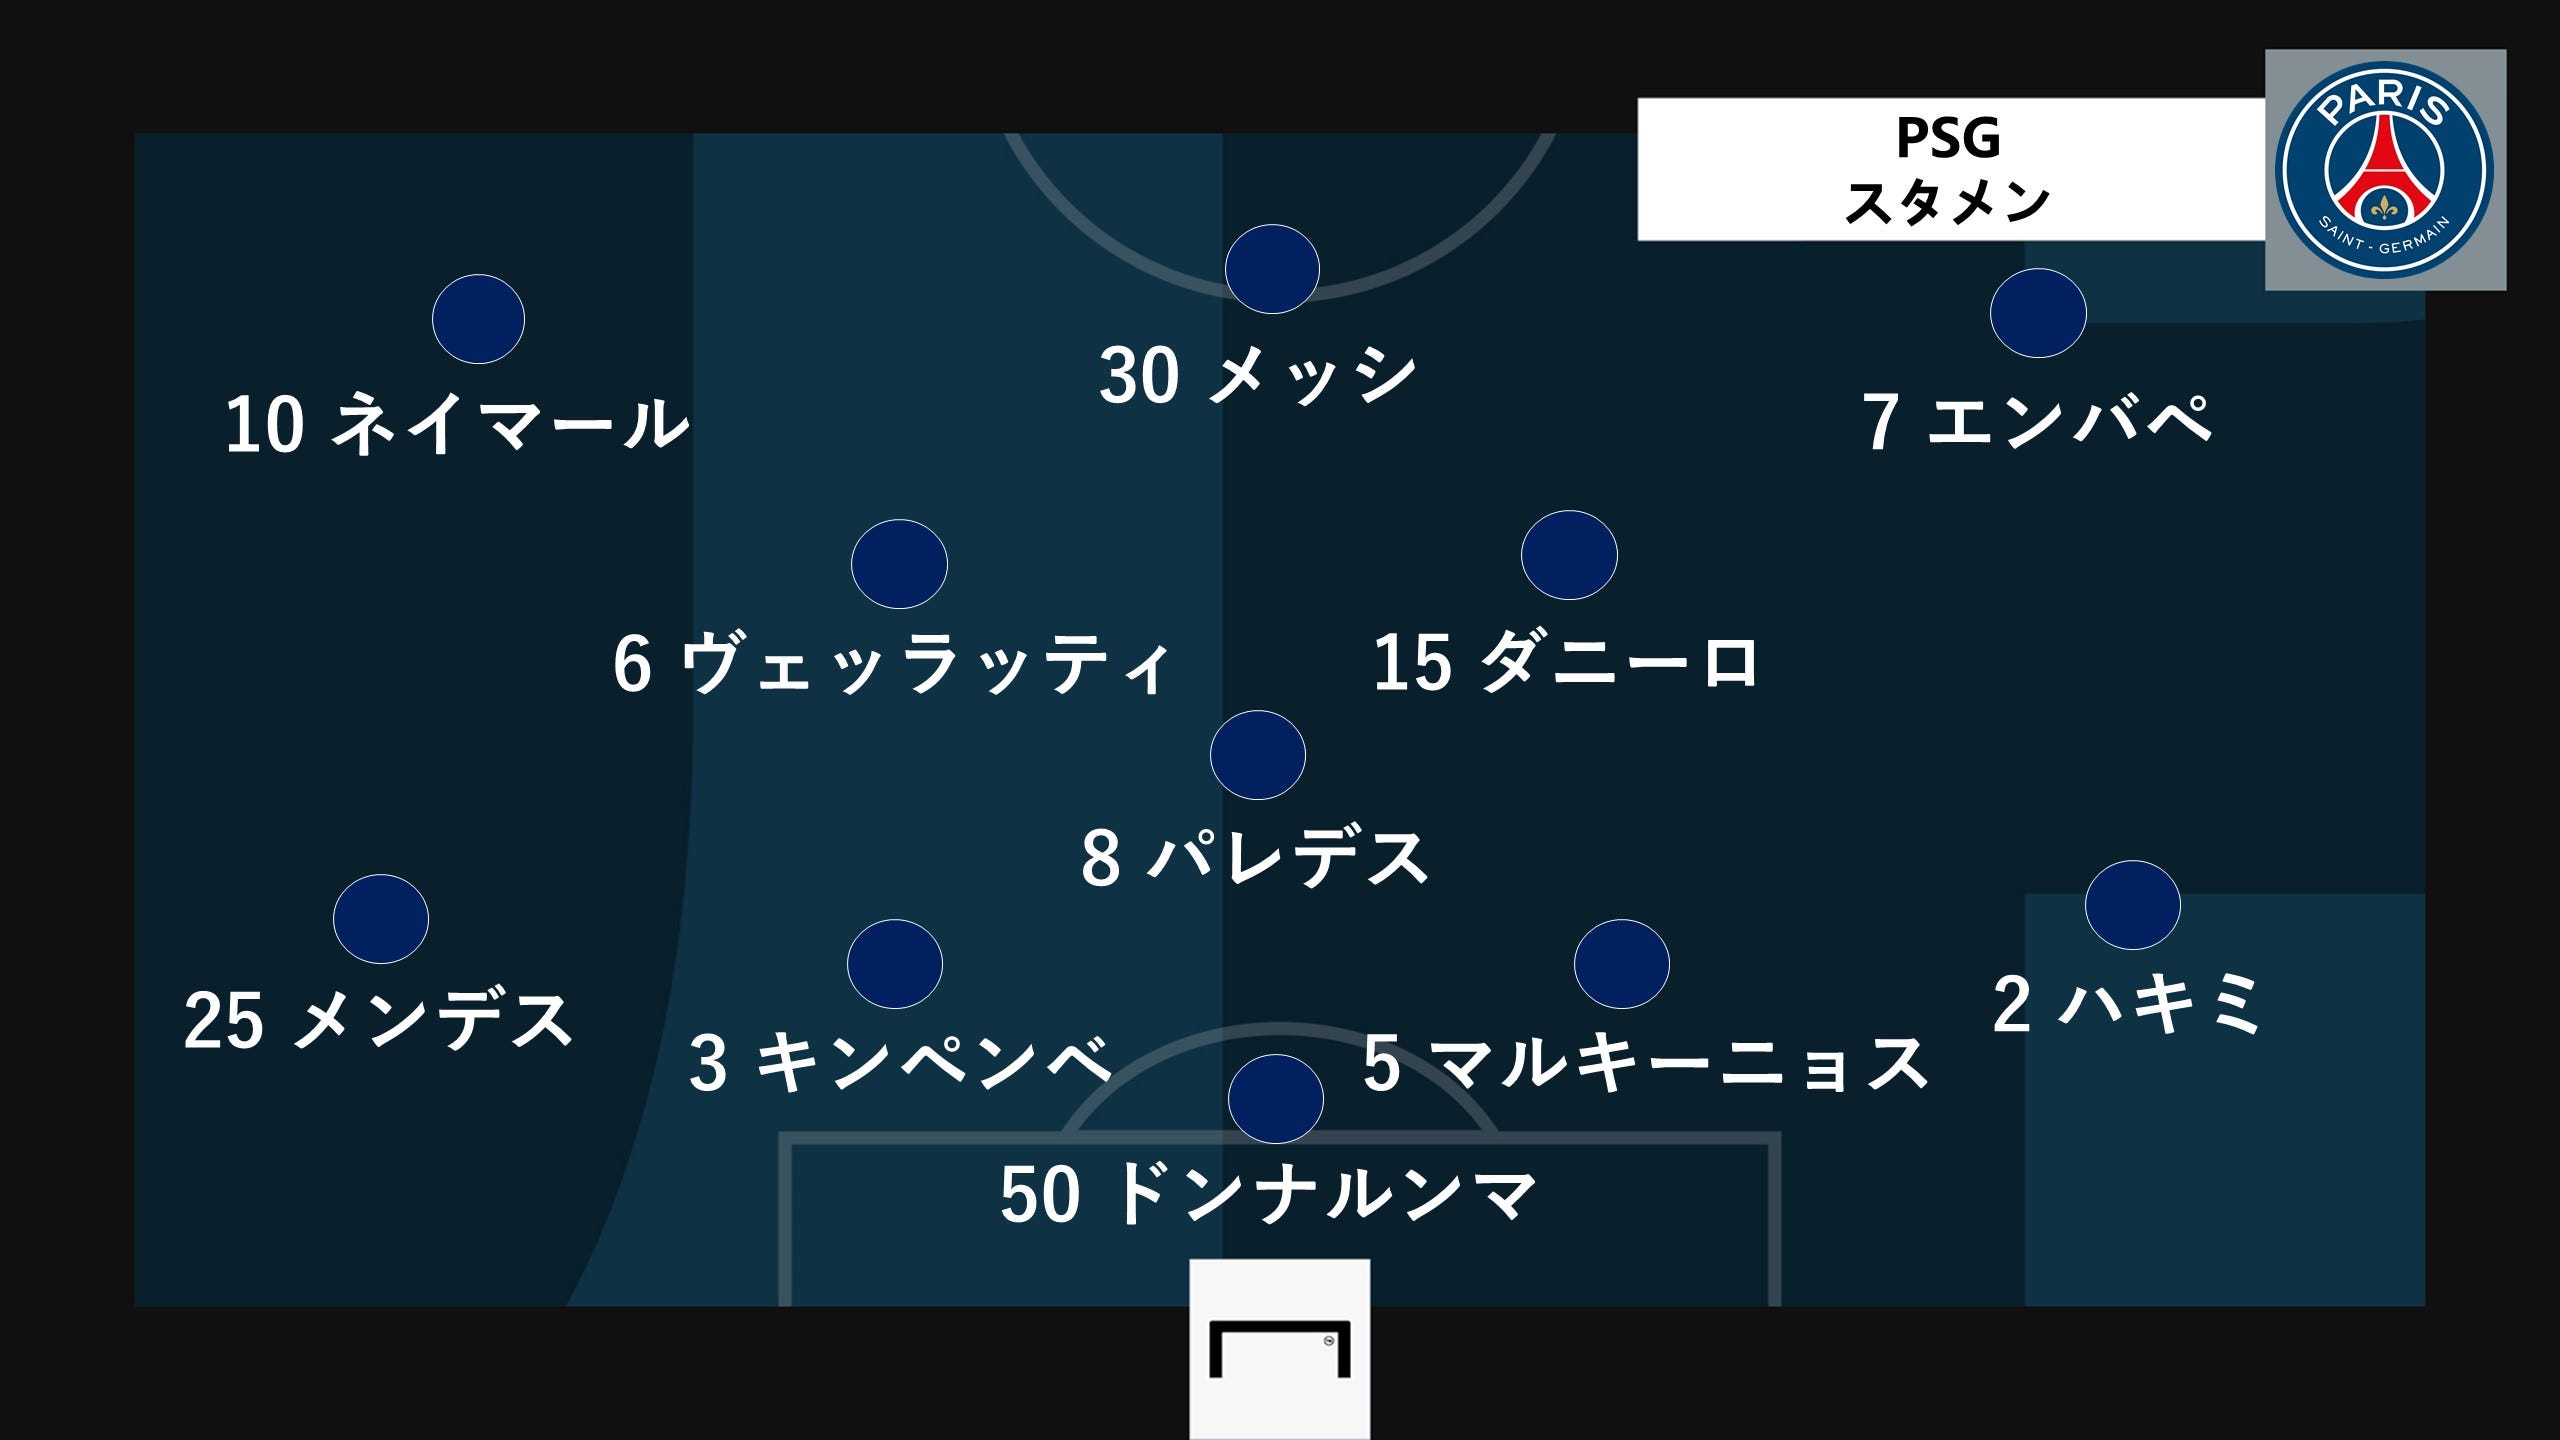 スタメン速報 レアル マドリー対psg 欧州clラウンド第2戦 Goal Com 日本